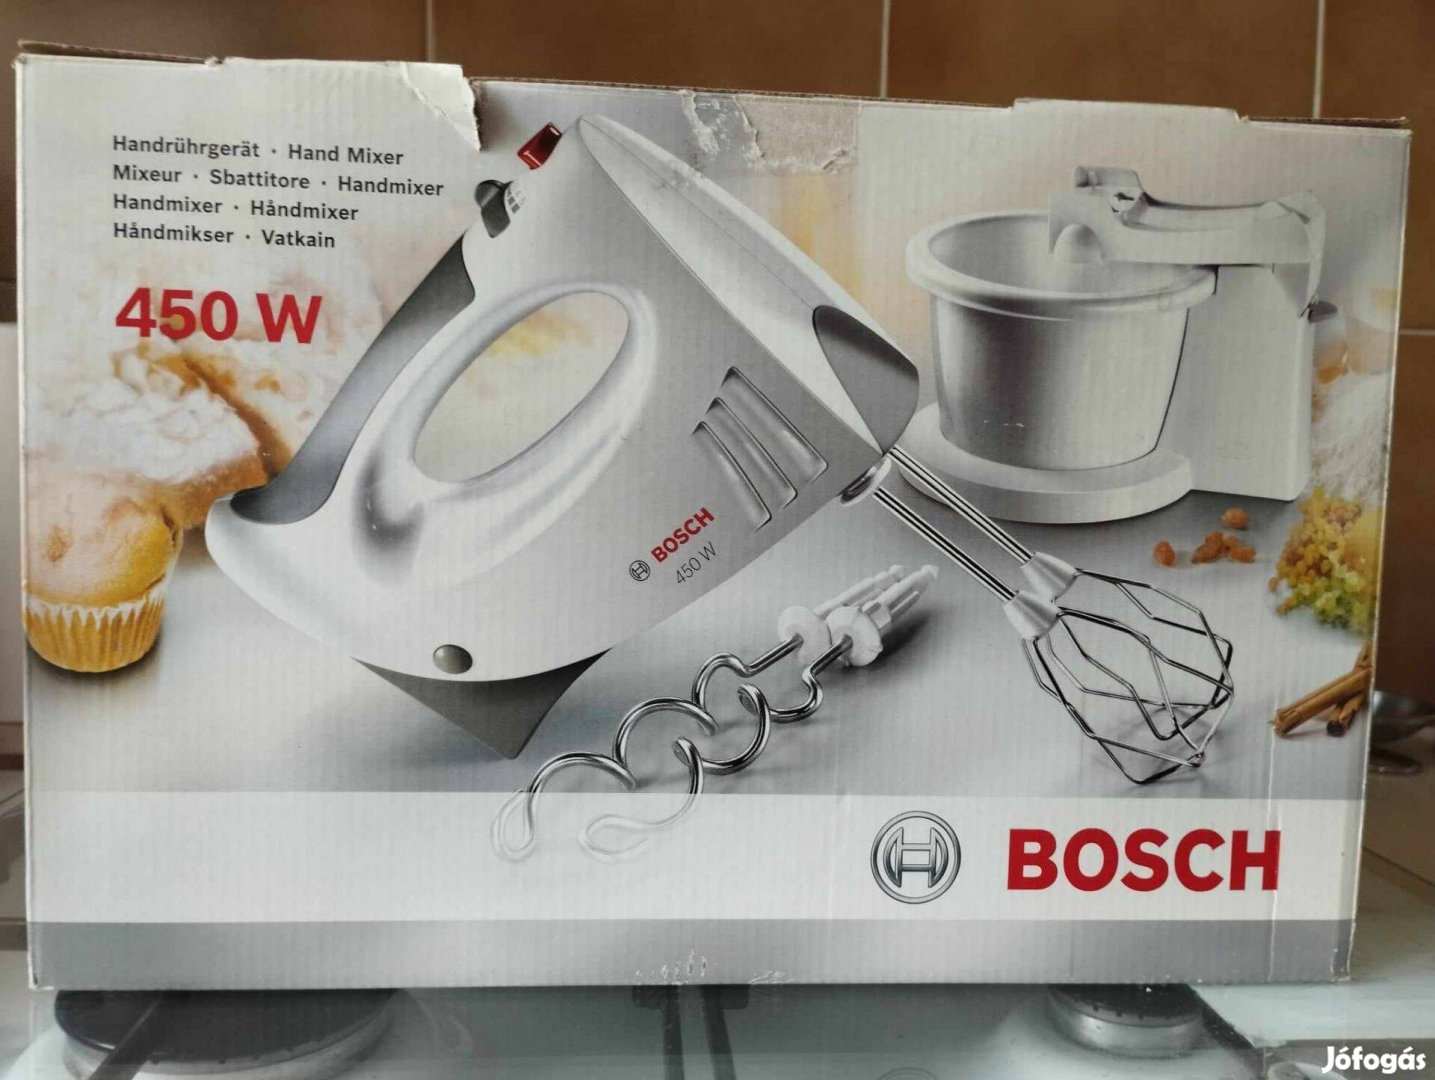 Új Bosch konyhai robotgép, mixer, 450 W, eredeti csomagolásban